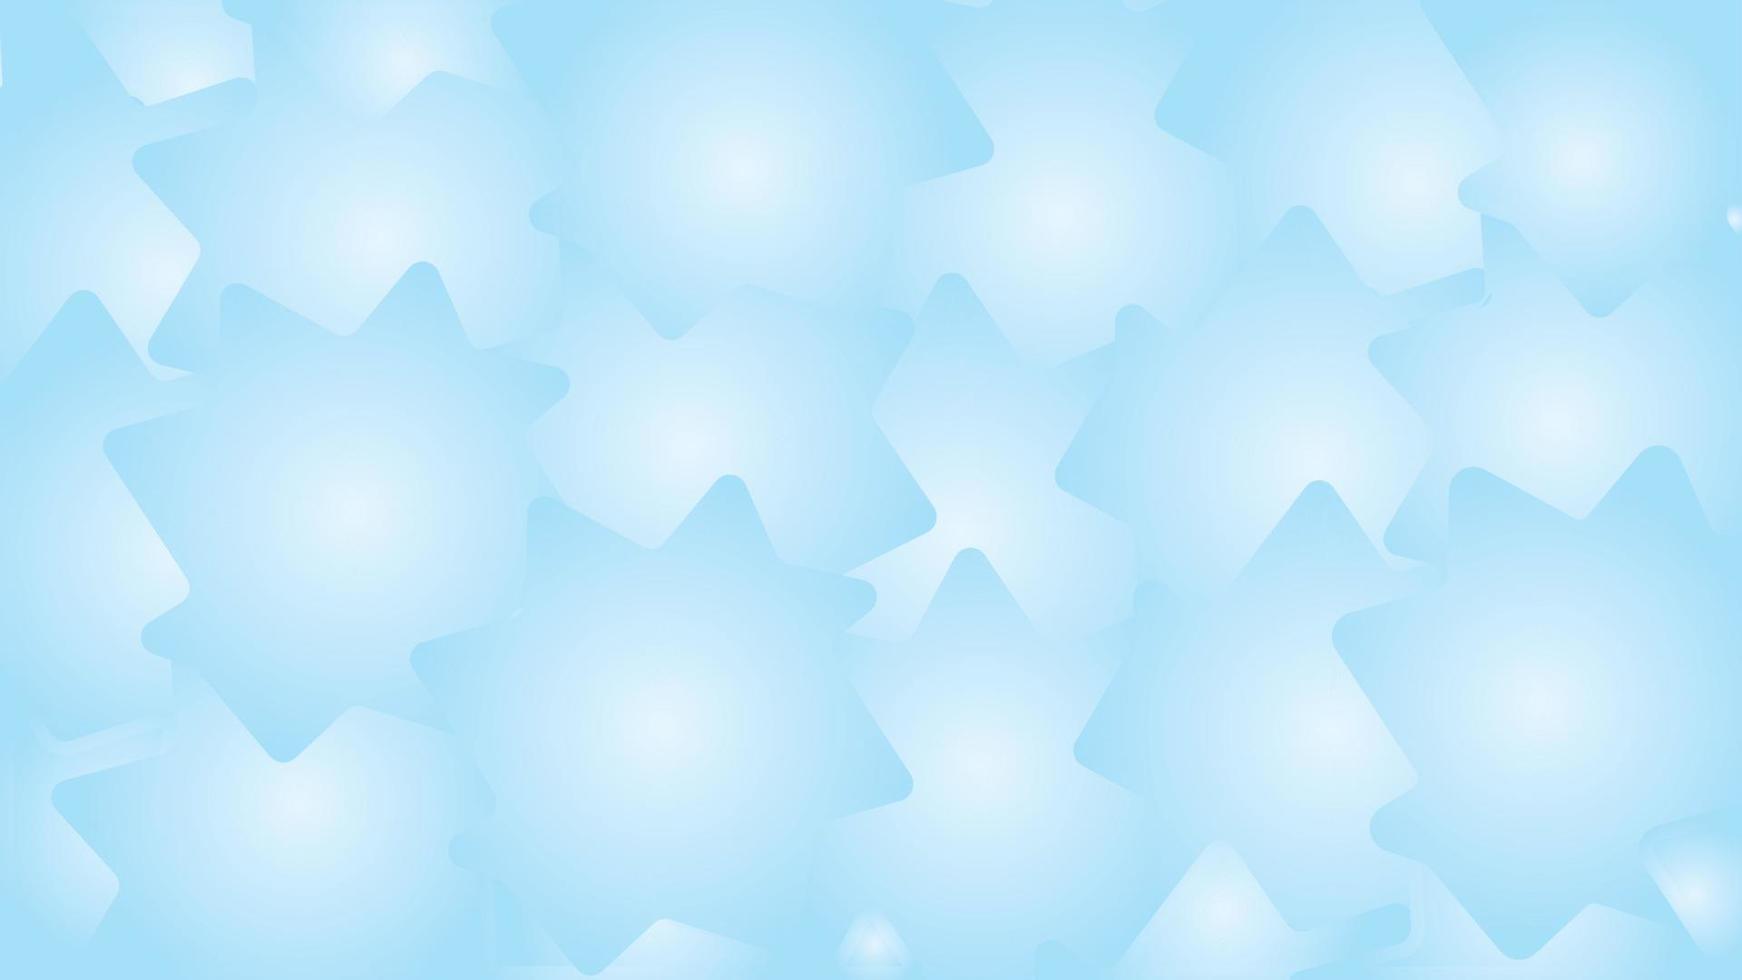 abstrakt blå bakgrund med stjärnor, aqua blå mjuk textur lutning bakgrund vektor